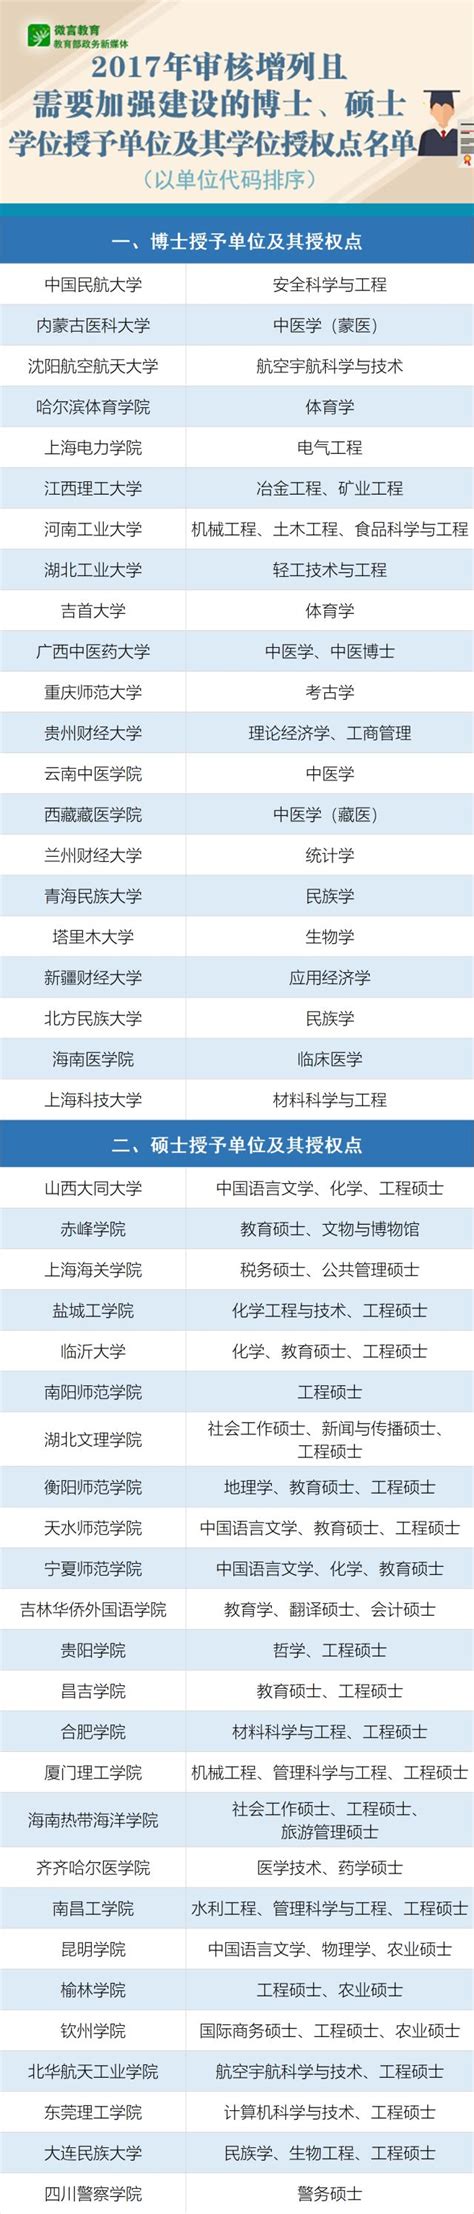 钱塘区新增多个博士硕士学位授予单位和学位授权点